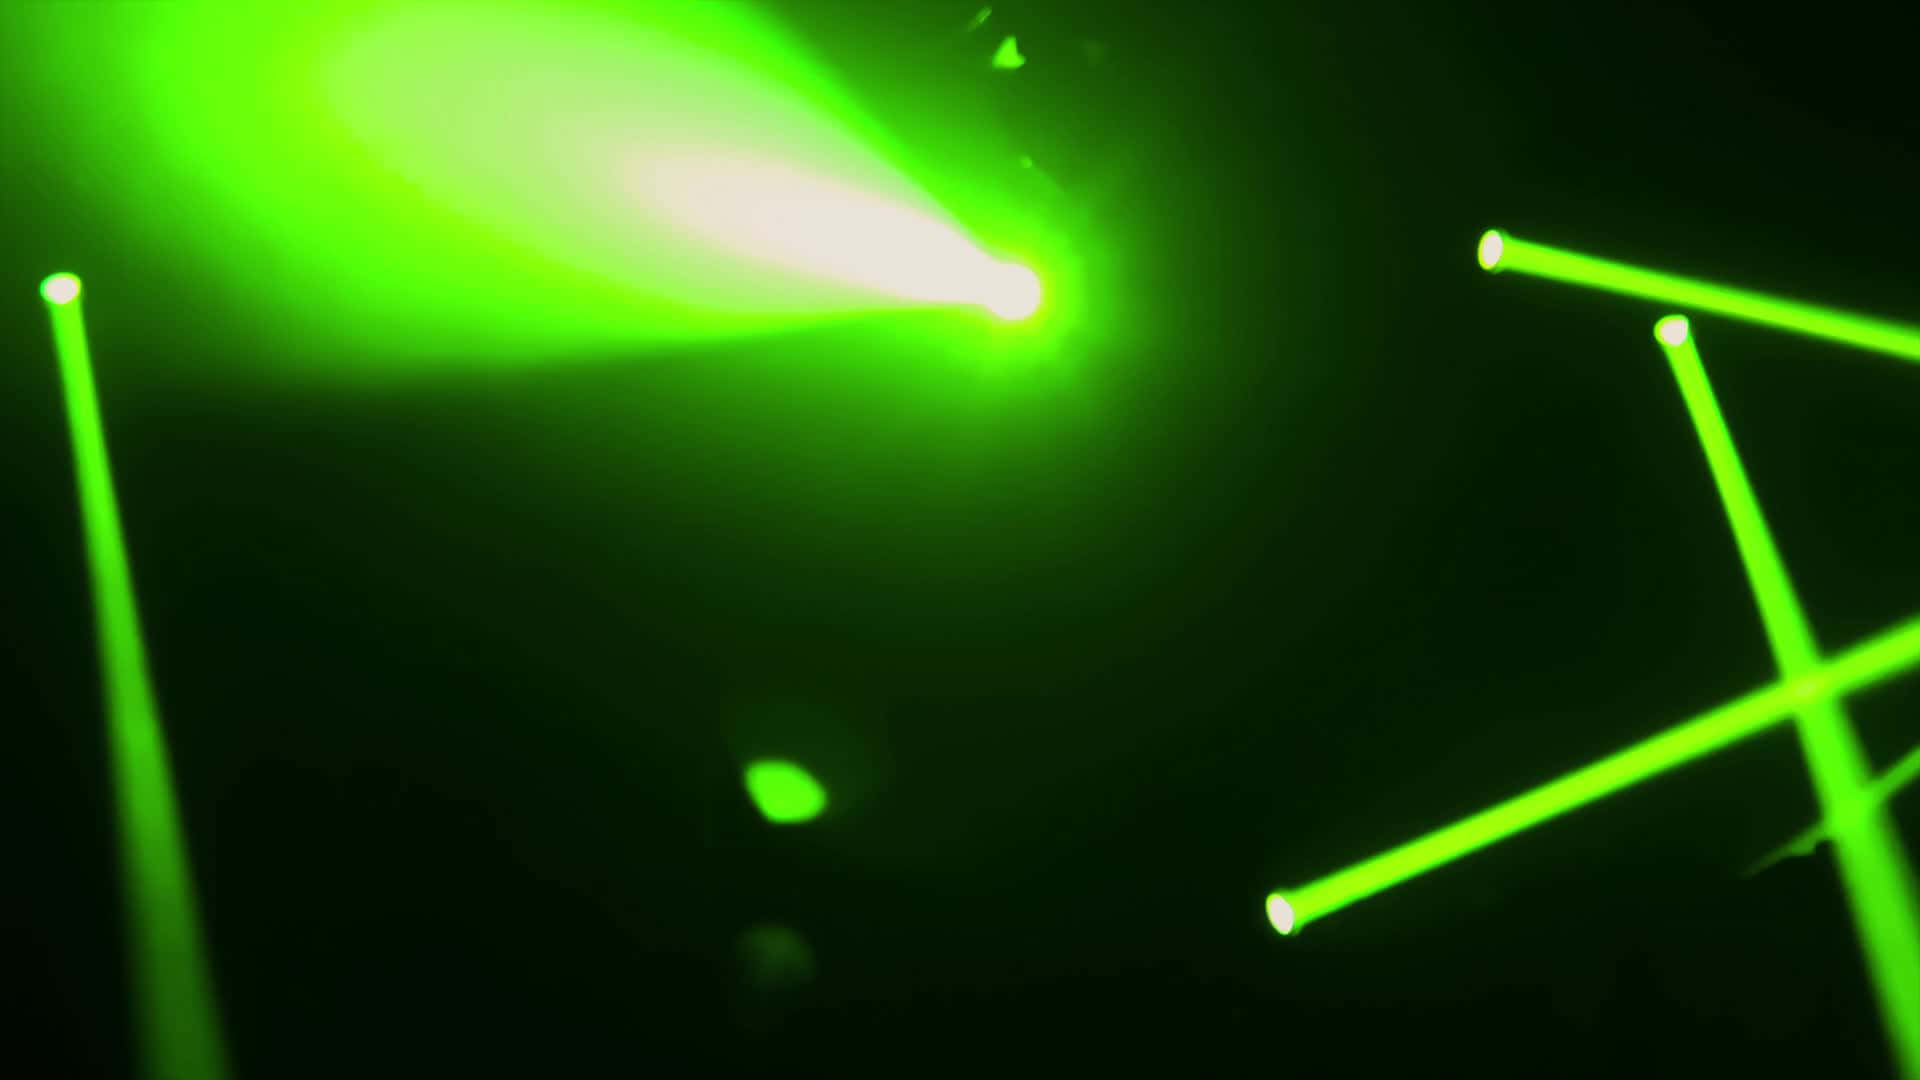 Sfondoverde Neon